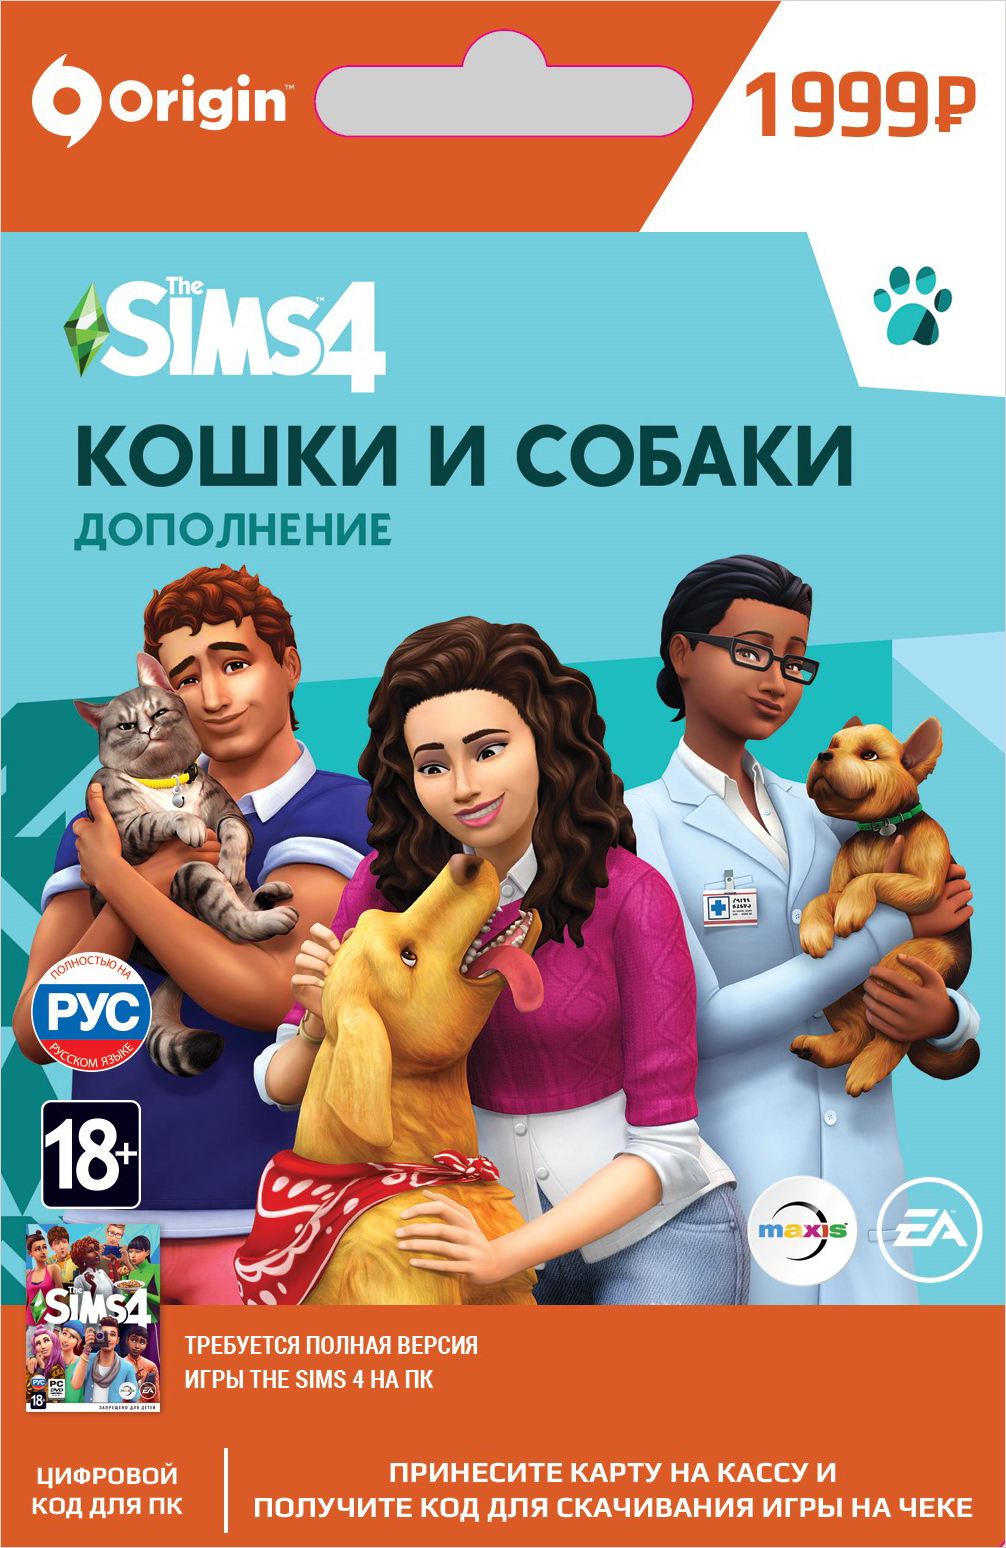 the sims 4 кошки и собаки. дополнение [pc